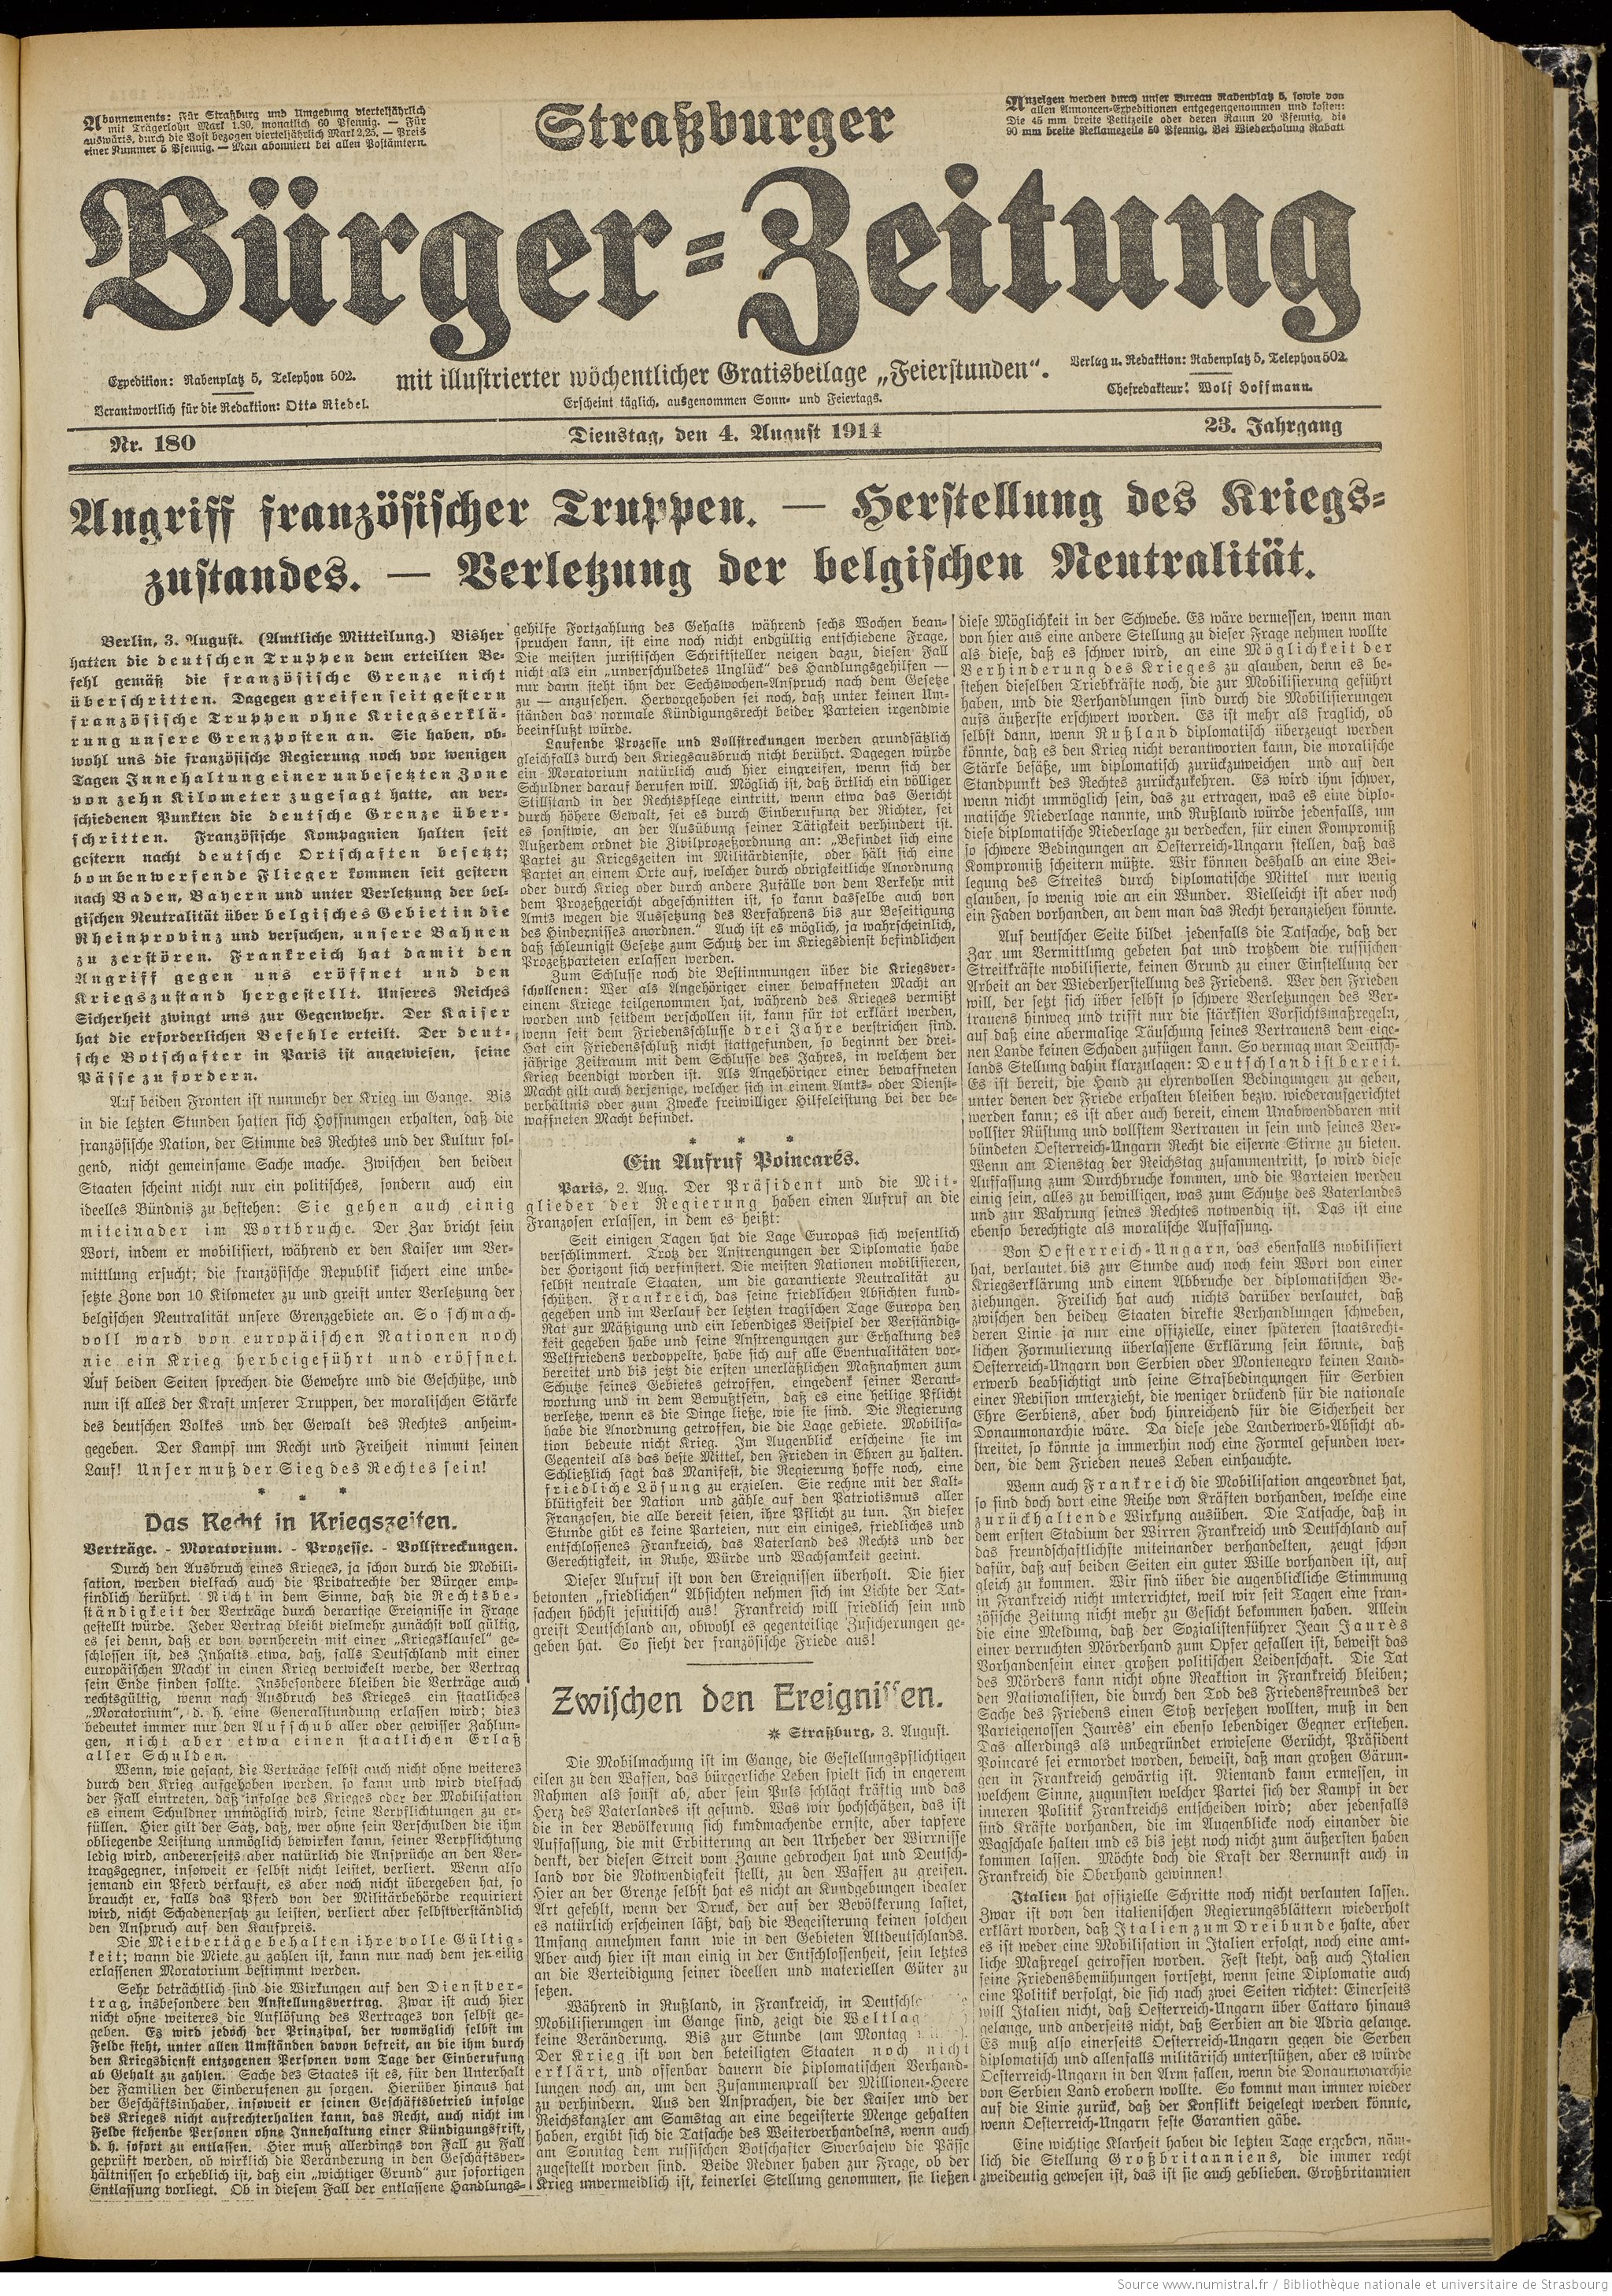 Bürger-Zeitung, 4 août 1914